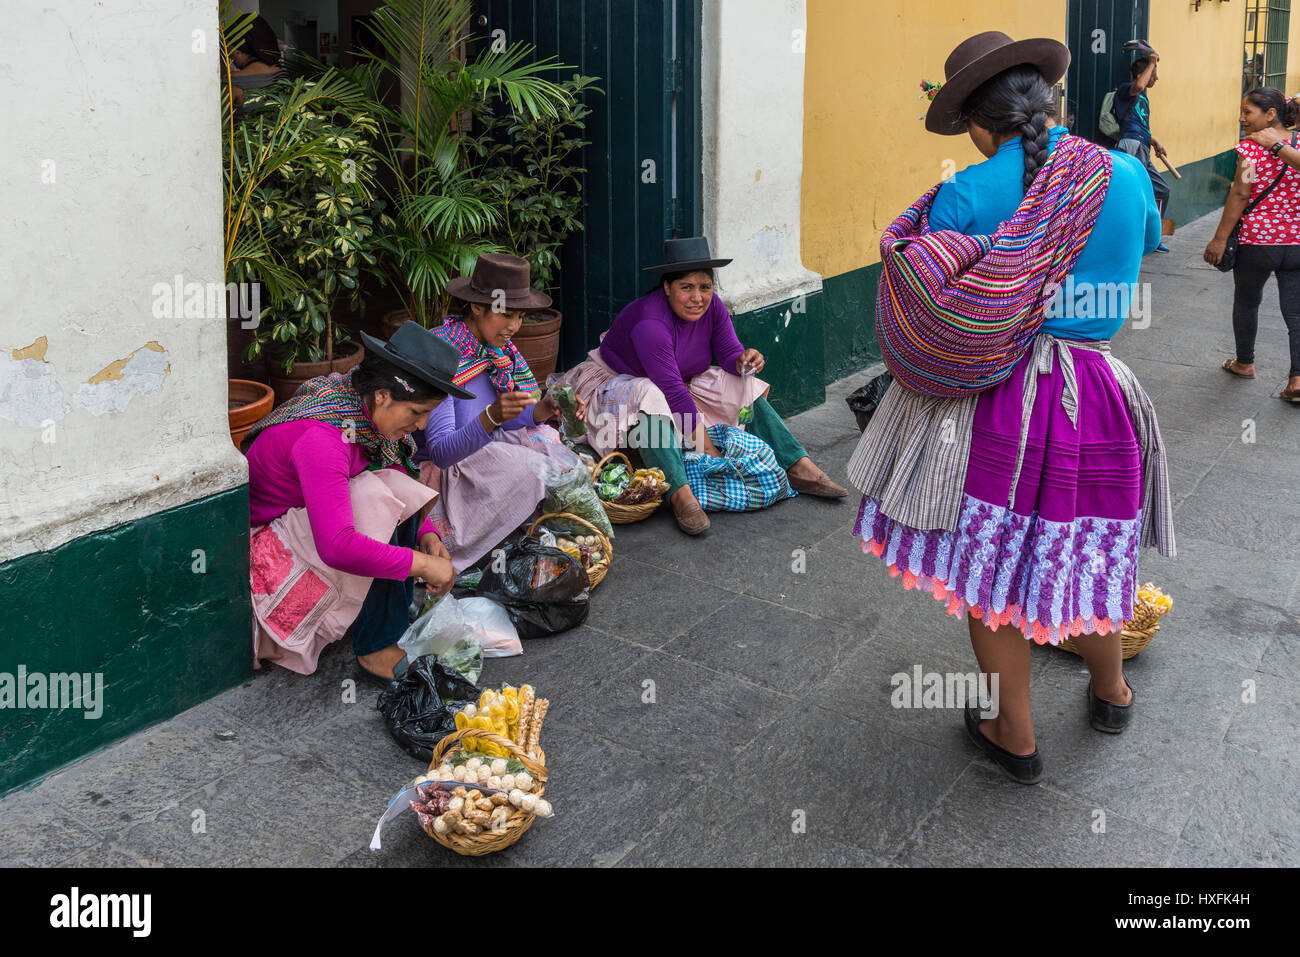 Les femmes de la tribu autochtone vendant des produits locaux aux touristes dans la rue. Lima, Pérou. Banque D'Images